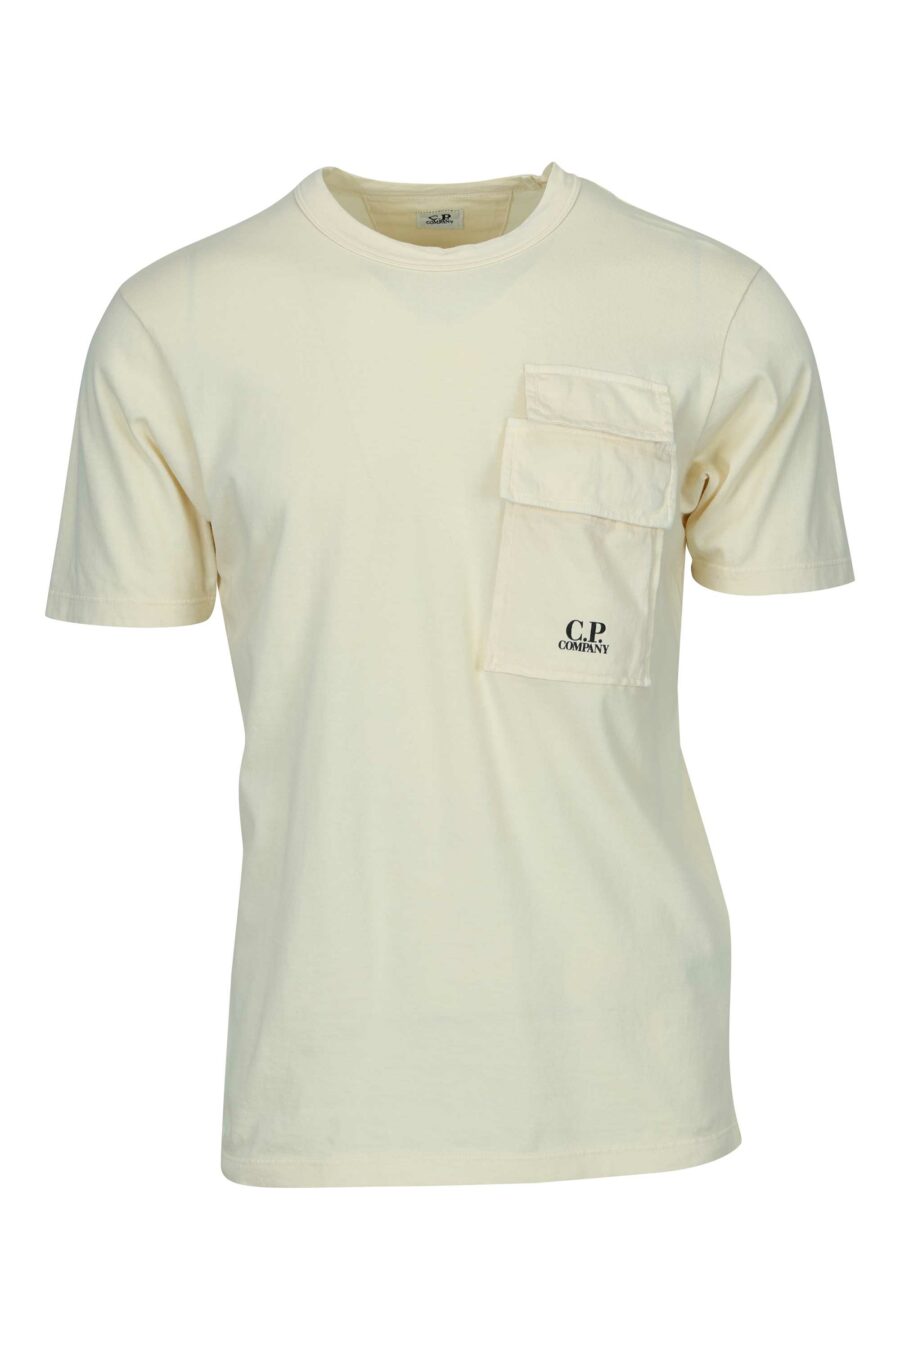 Buy CP BRO Men's Slim Fit T-Shirt (BRP - 356 B SF P_Multicolor_M) at